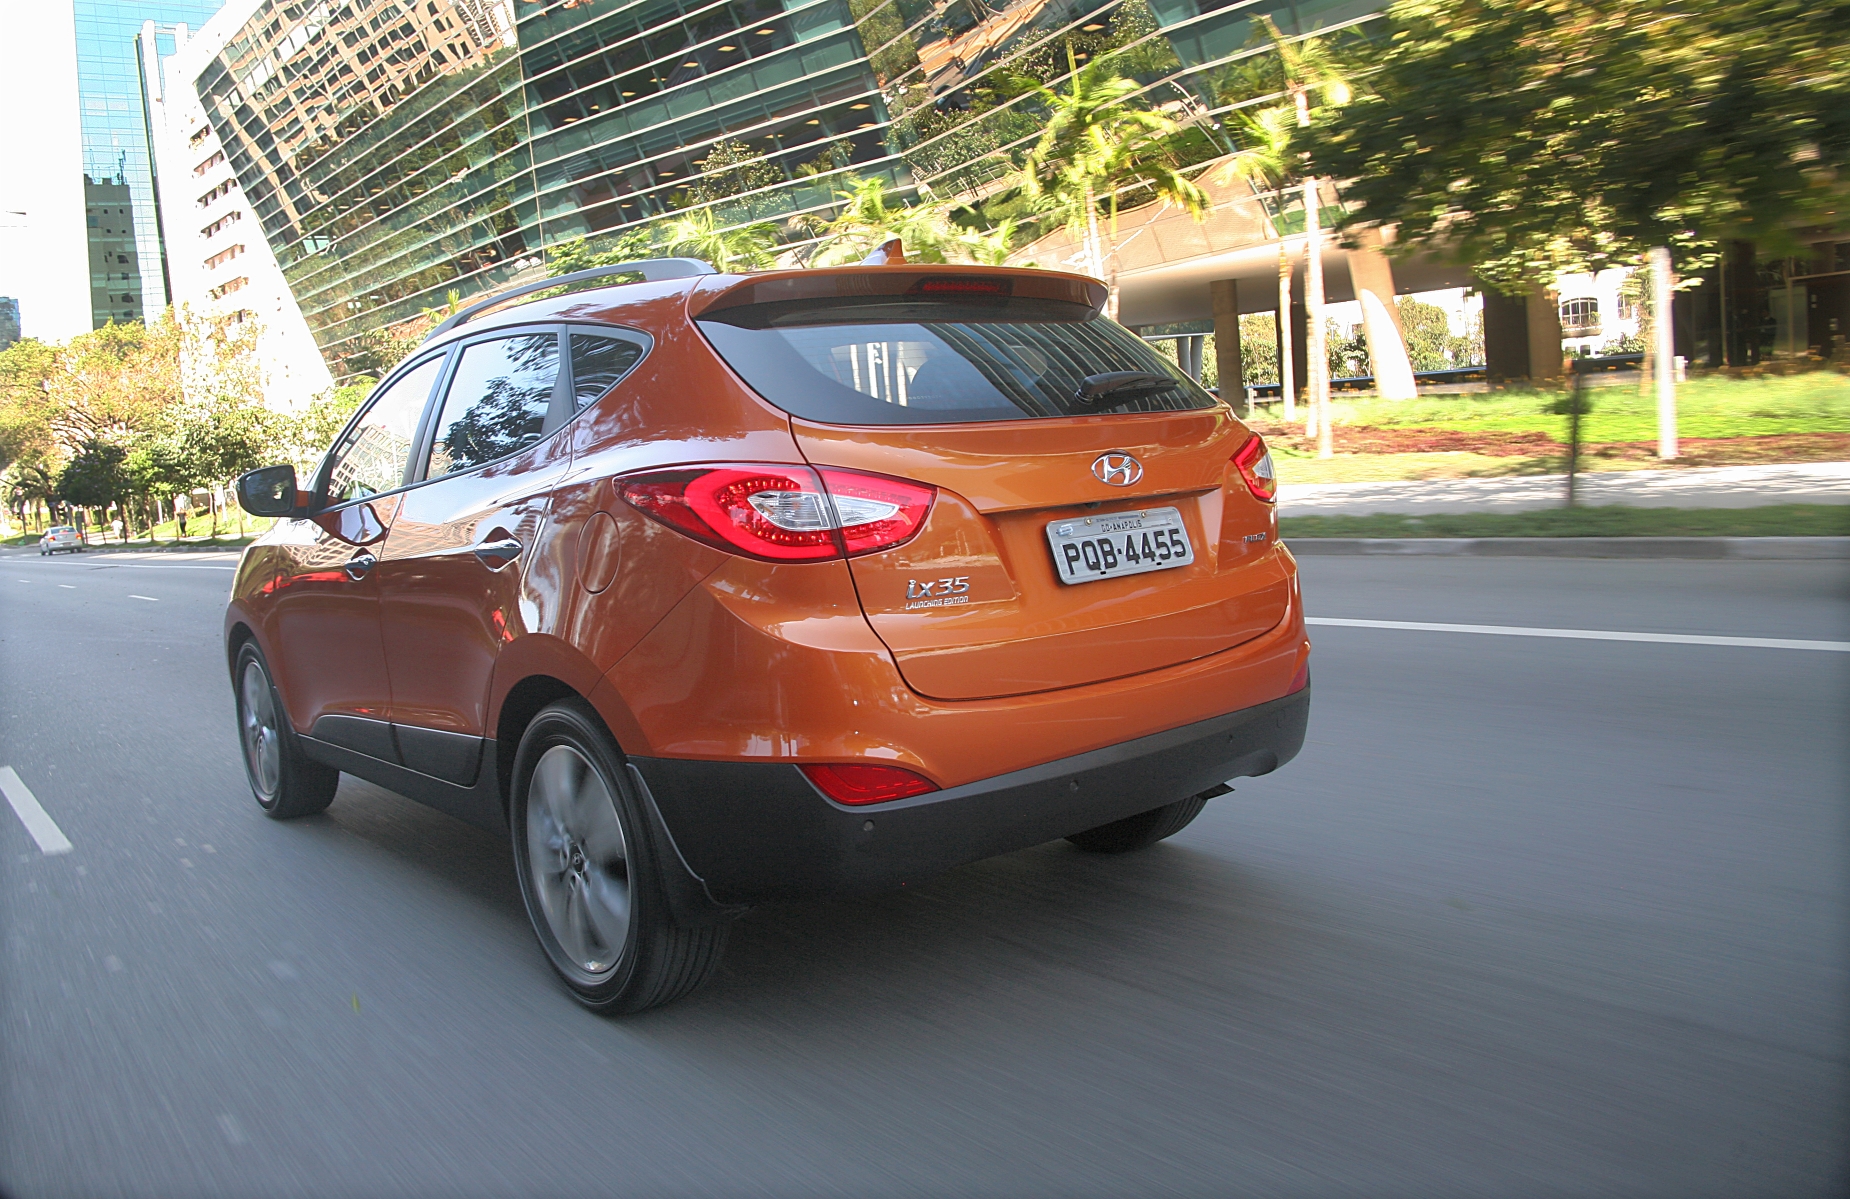 hyundai ix35 modelo 2015 laranja de traseira em movimento no asfalto